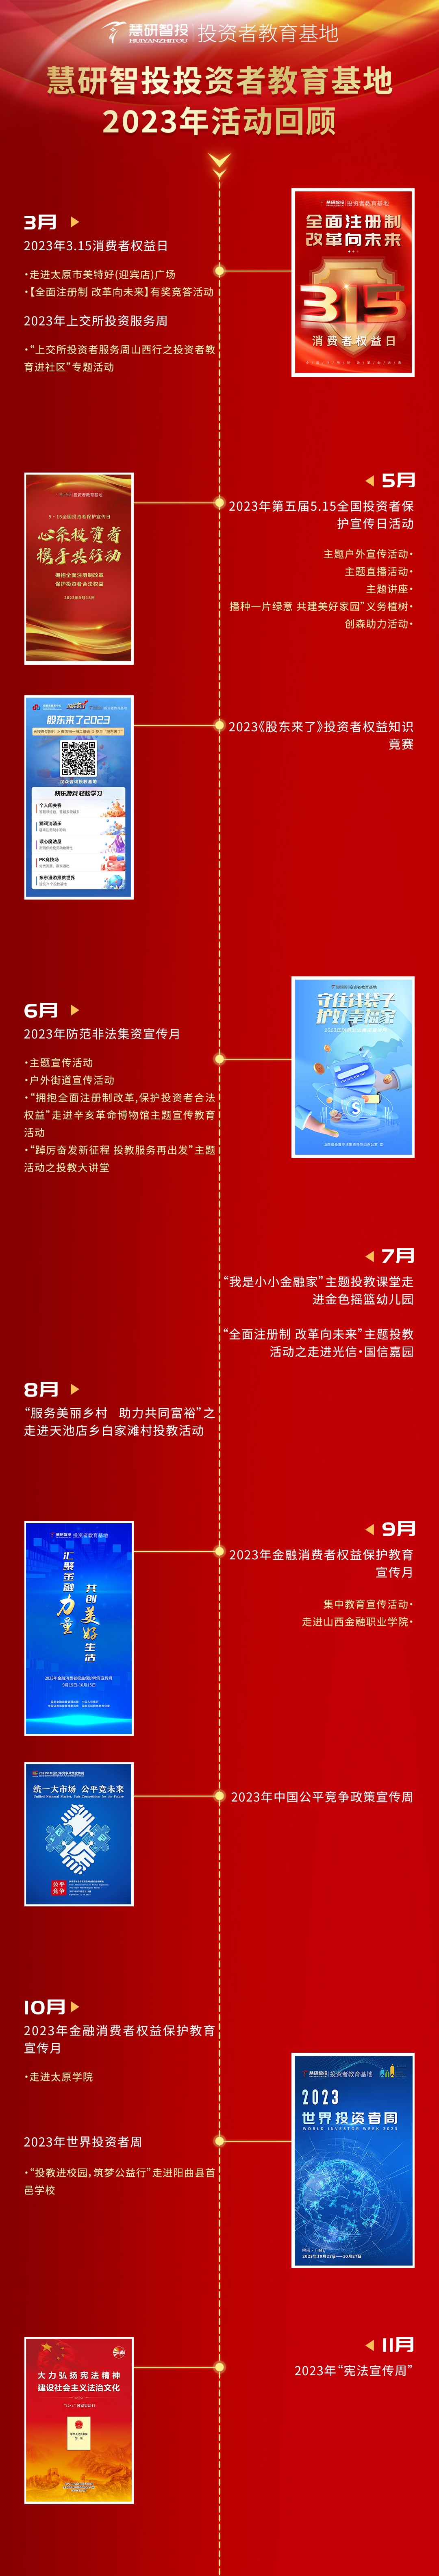 慧研智投投资者教育基地2023年投教活动回顾(1).jpg